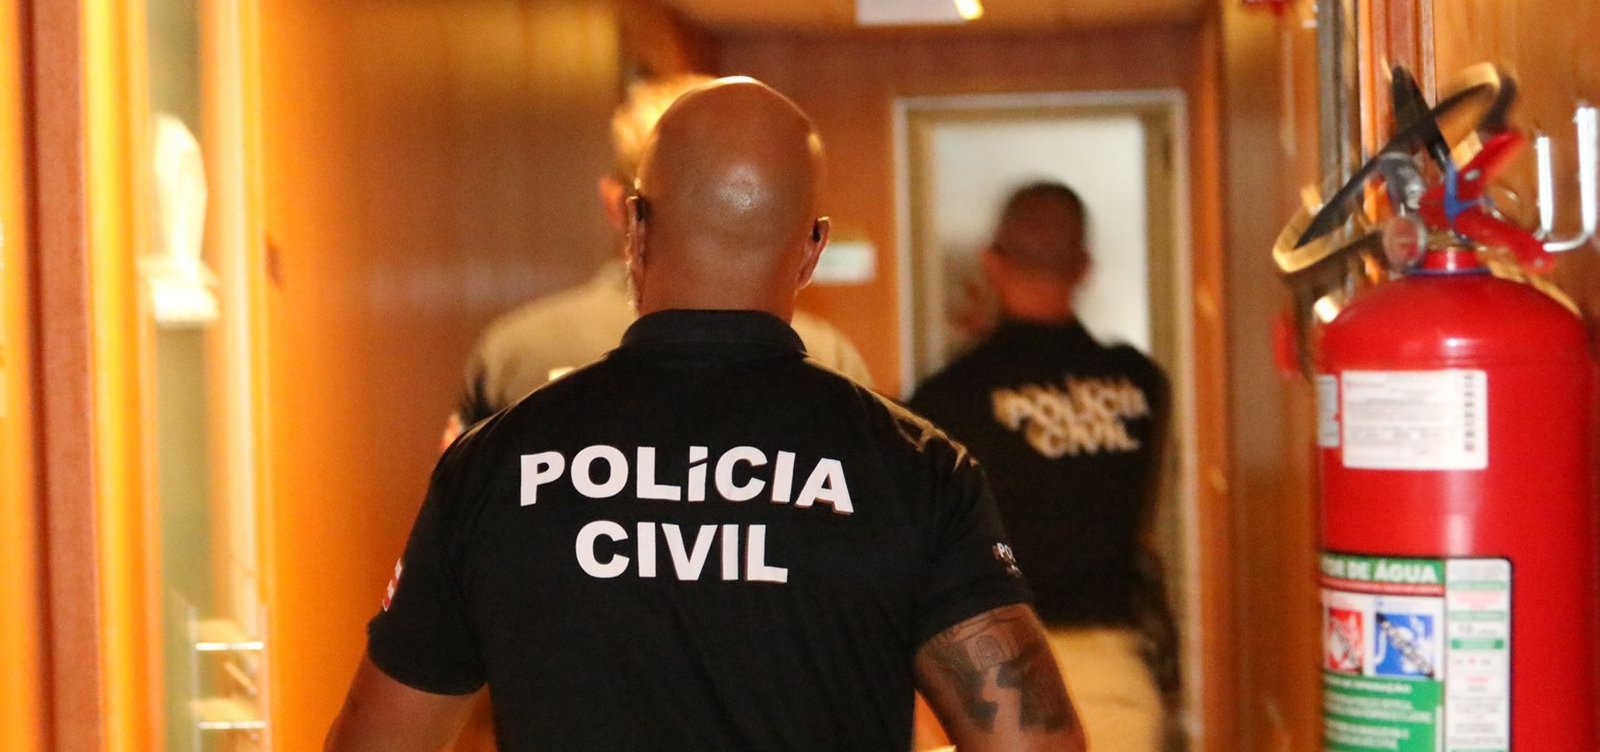 Vereador é preso suspeito de ameaçar colega parlamentar com pistola em sessão solene da casa legislativa